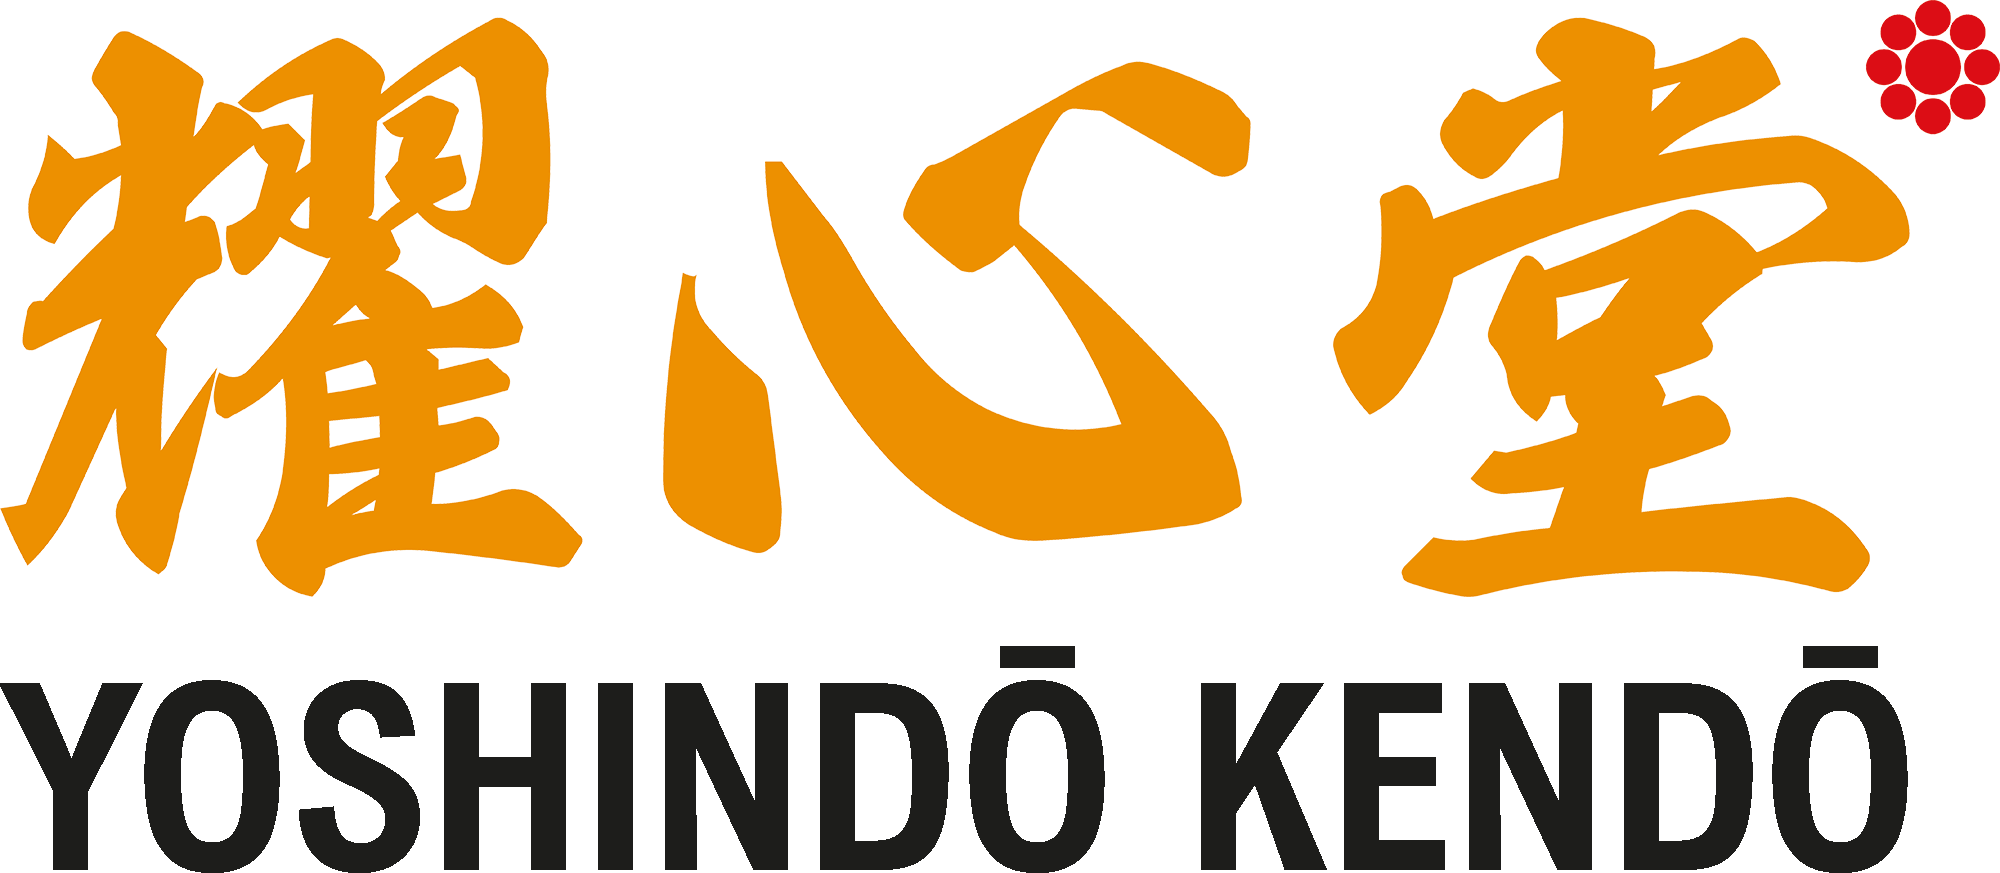 Yoshindo Kendo dojo logo